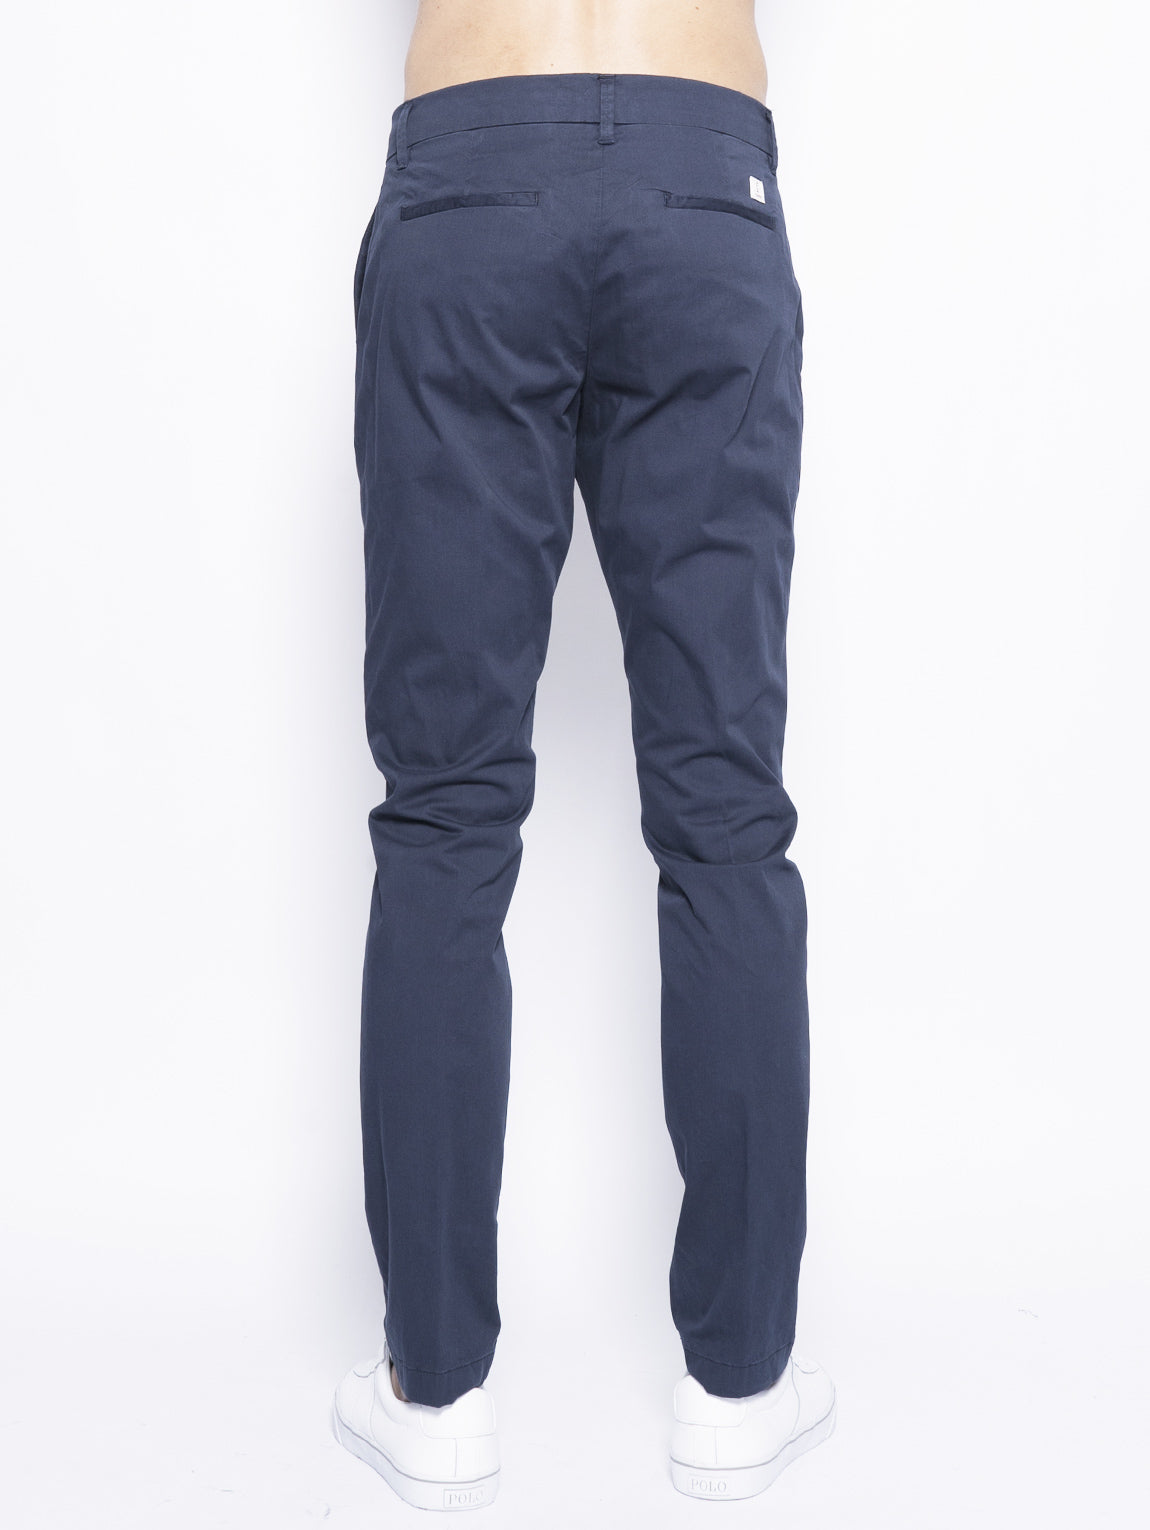 Clifton Skinny Blu-Pantaloni-CLOSED-TRYME Shop